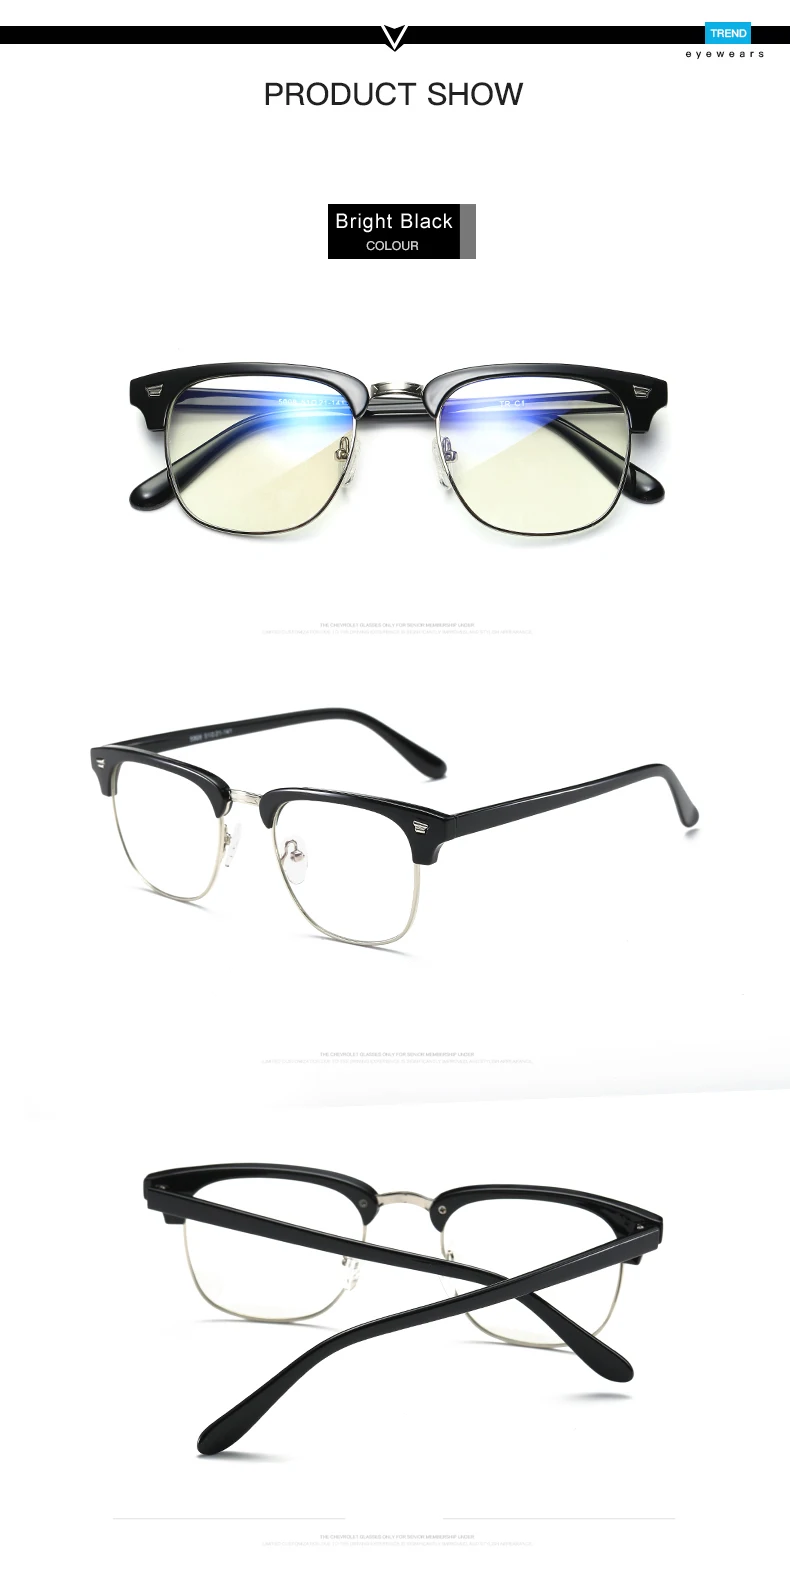 AORON бренд TR90 анти голубой луч прозрачные линзы поддельные очки защитные очки титановая оправа для чтения компьютерные очки для женщин и мужчин